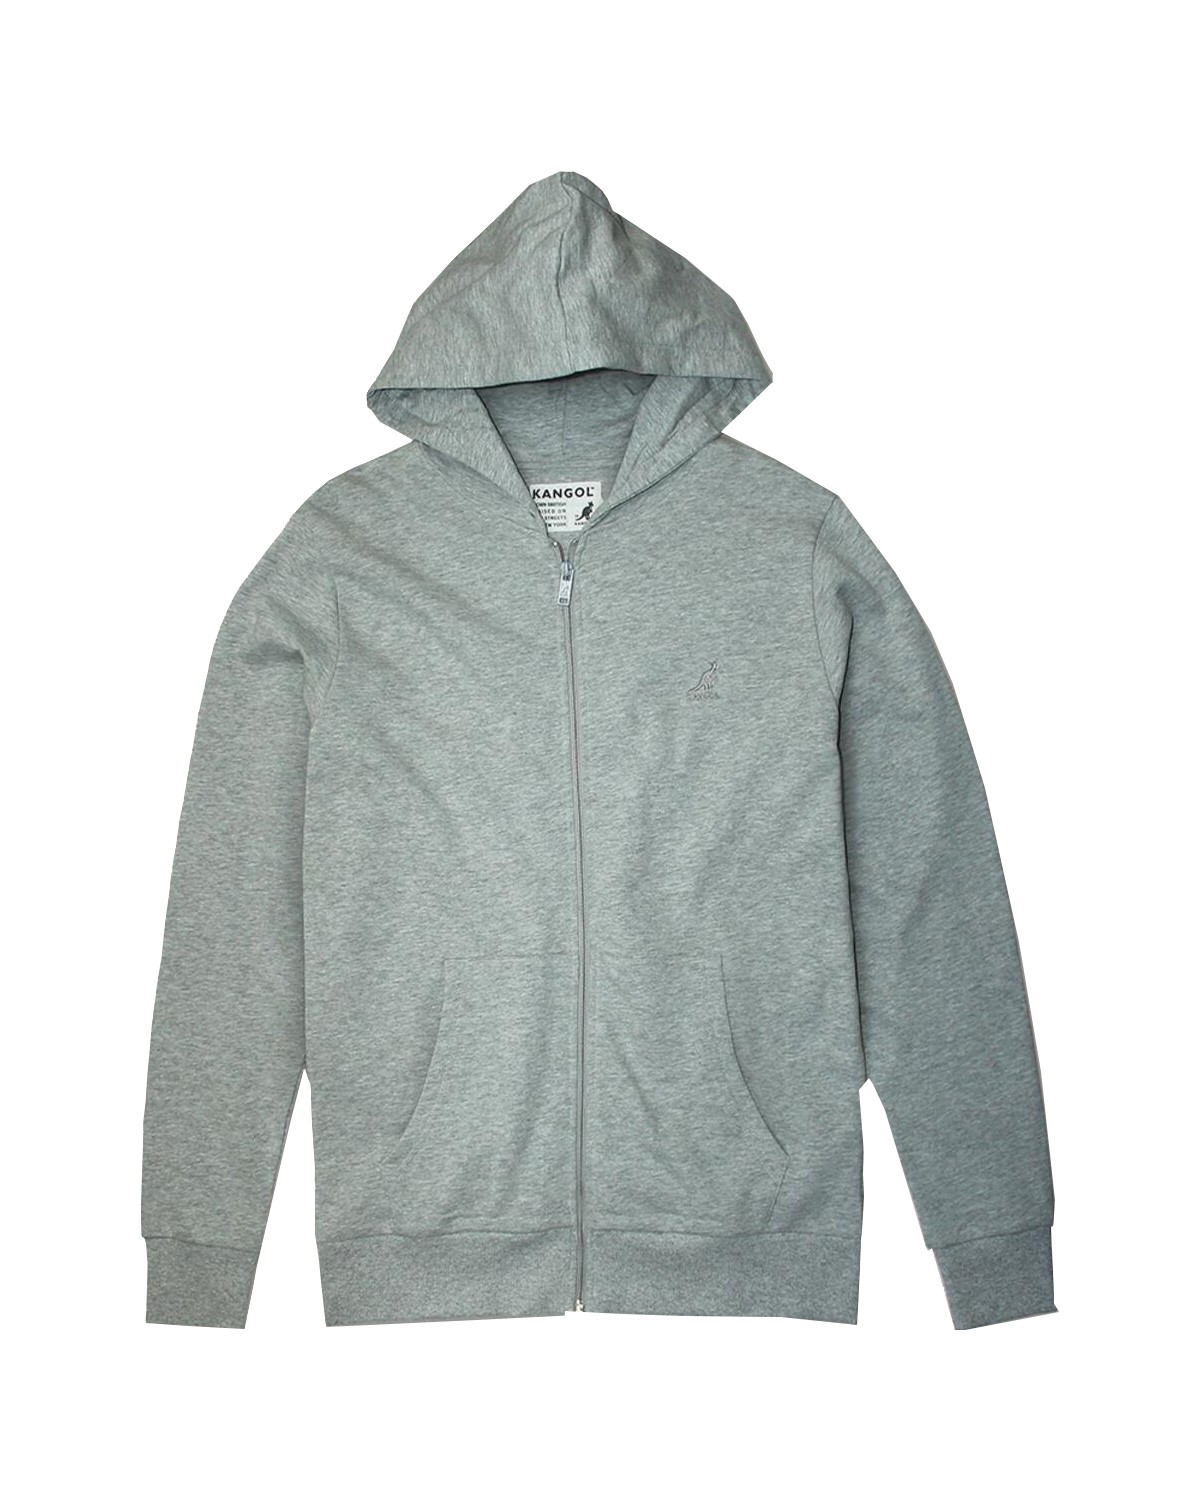 Mens Boys Kangol Designer Fleece Sweatshirt  Zipper Top Size XL RRP £45 S 